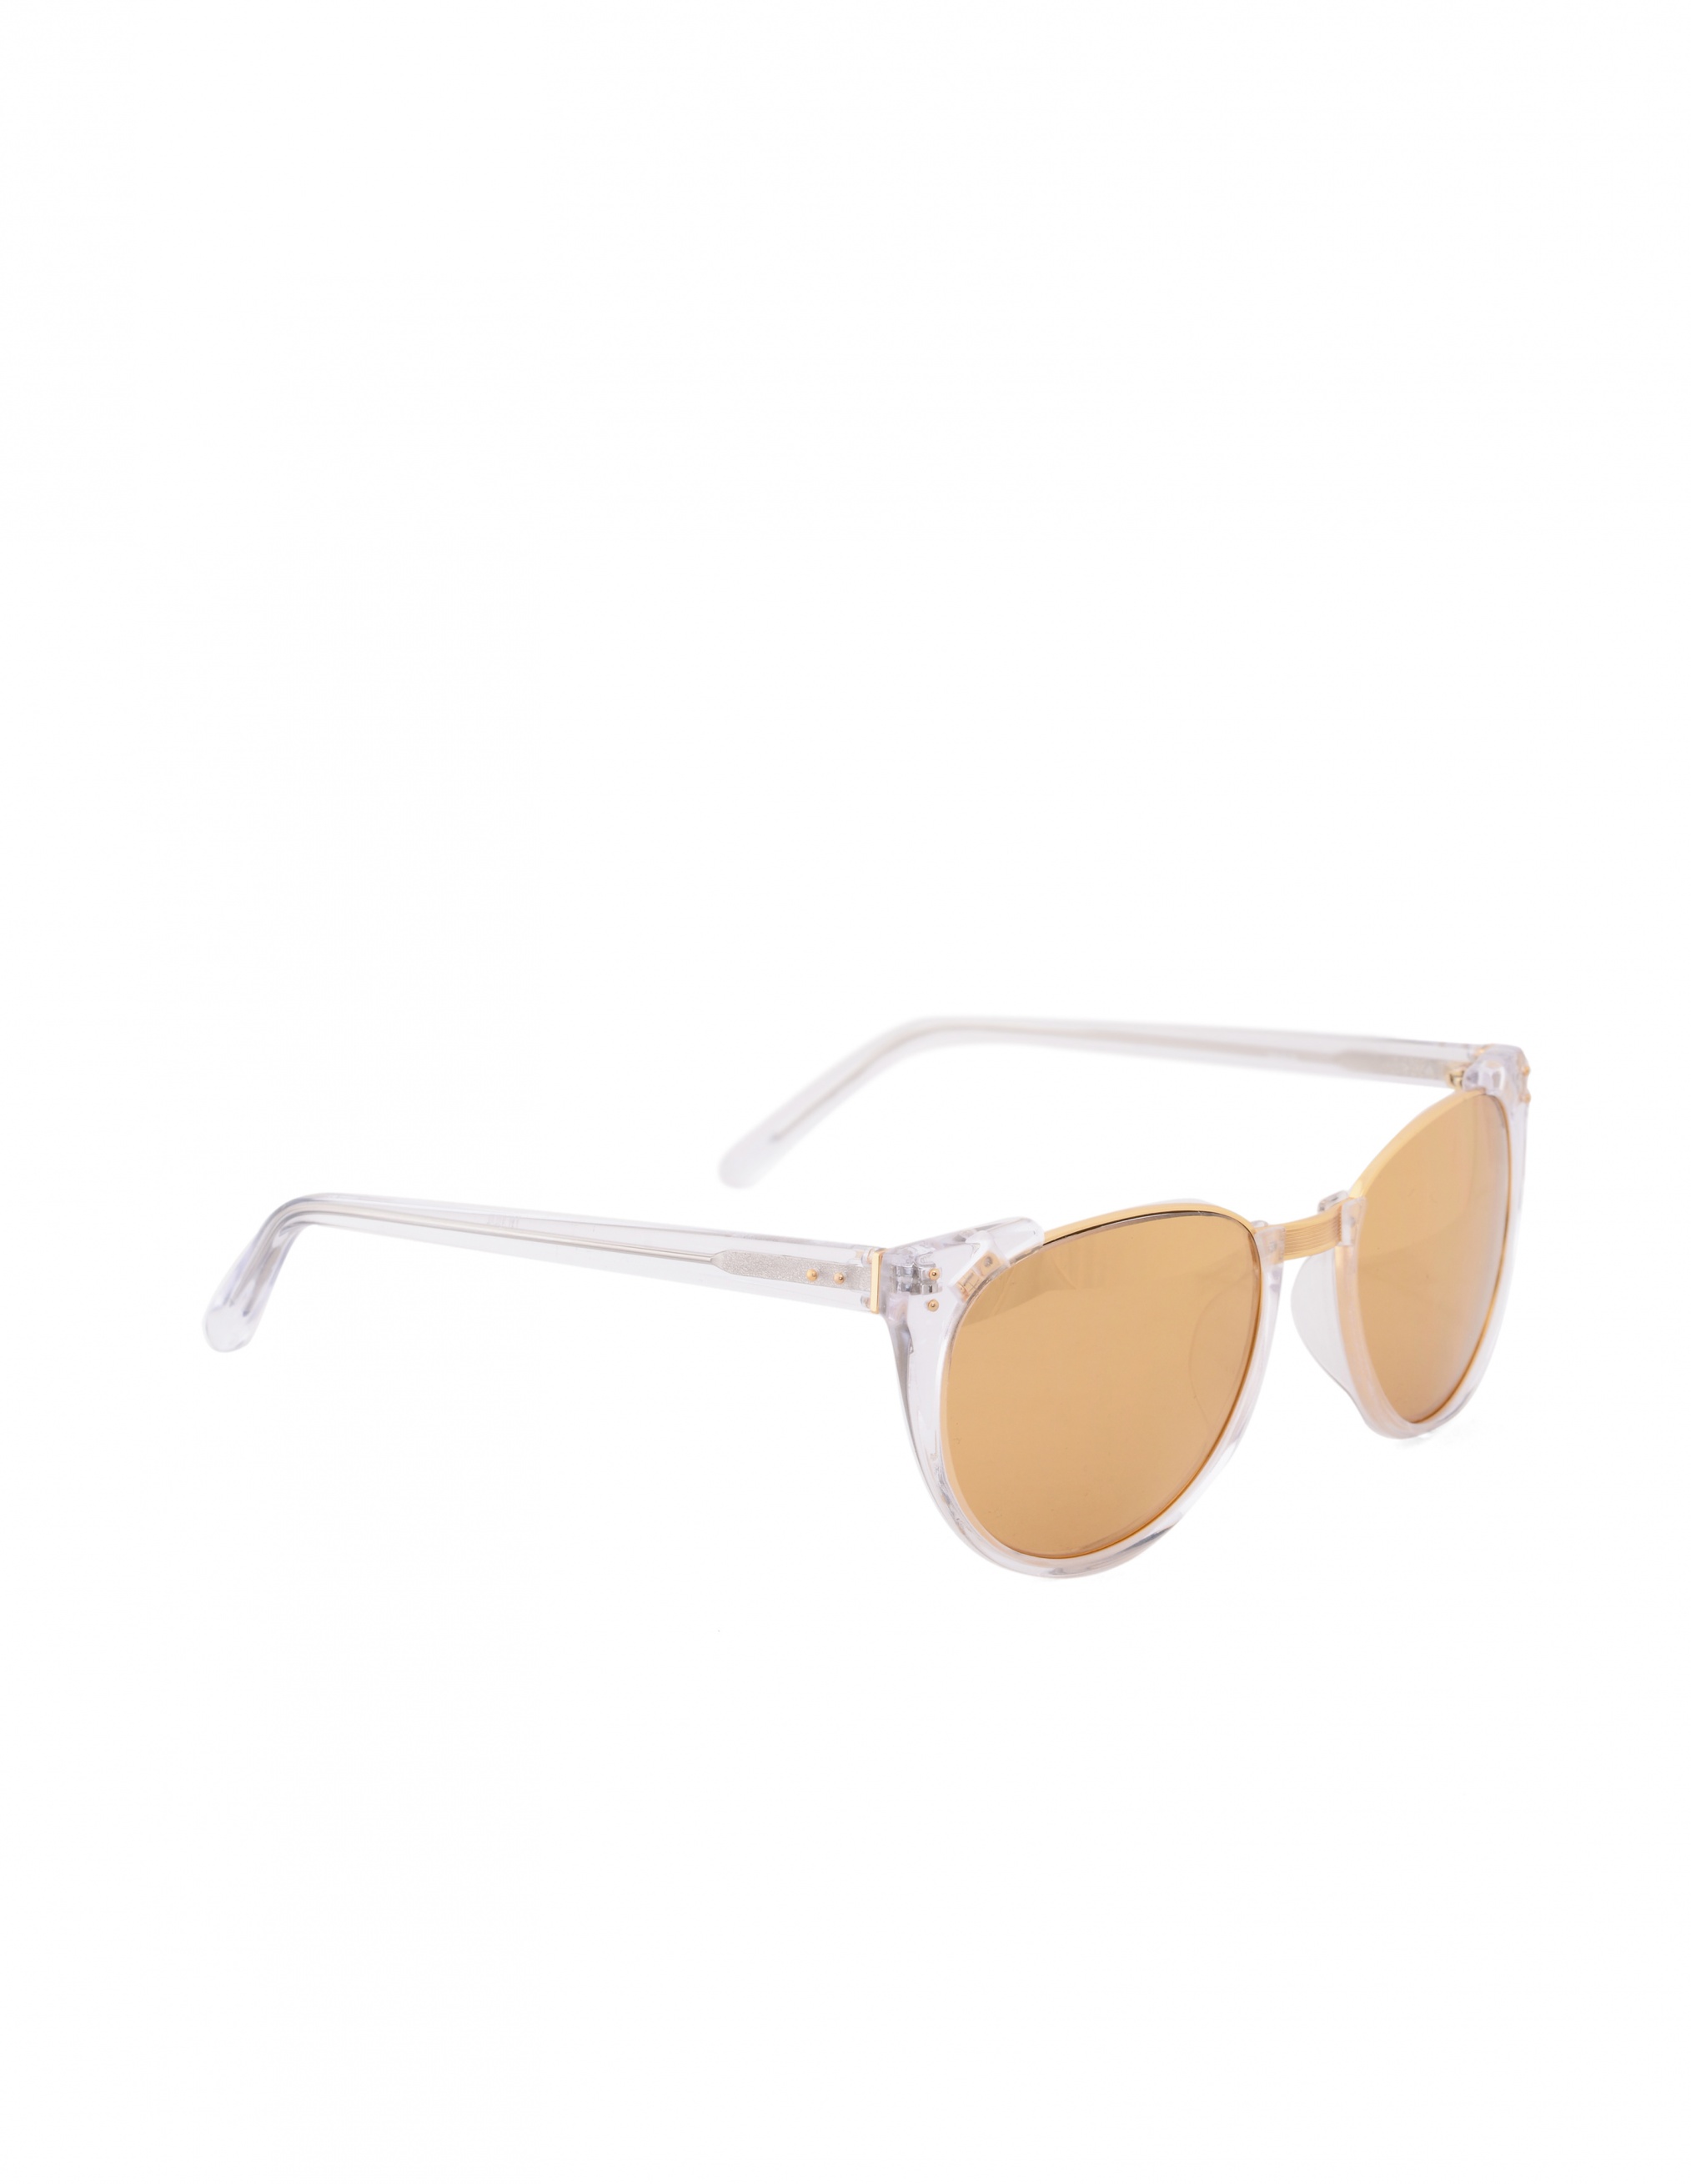 Солнцезащитные очки "Luxe Linda Farrow LFL136C26SUN, размер sm